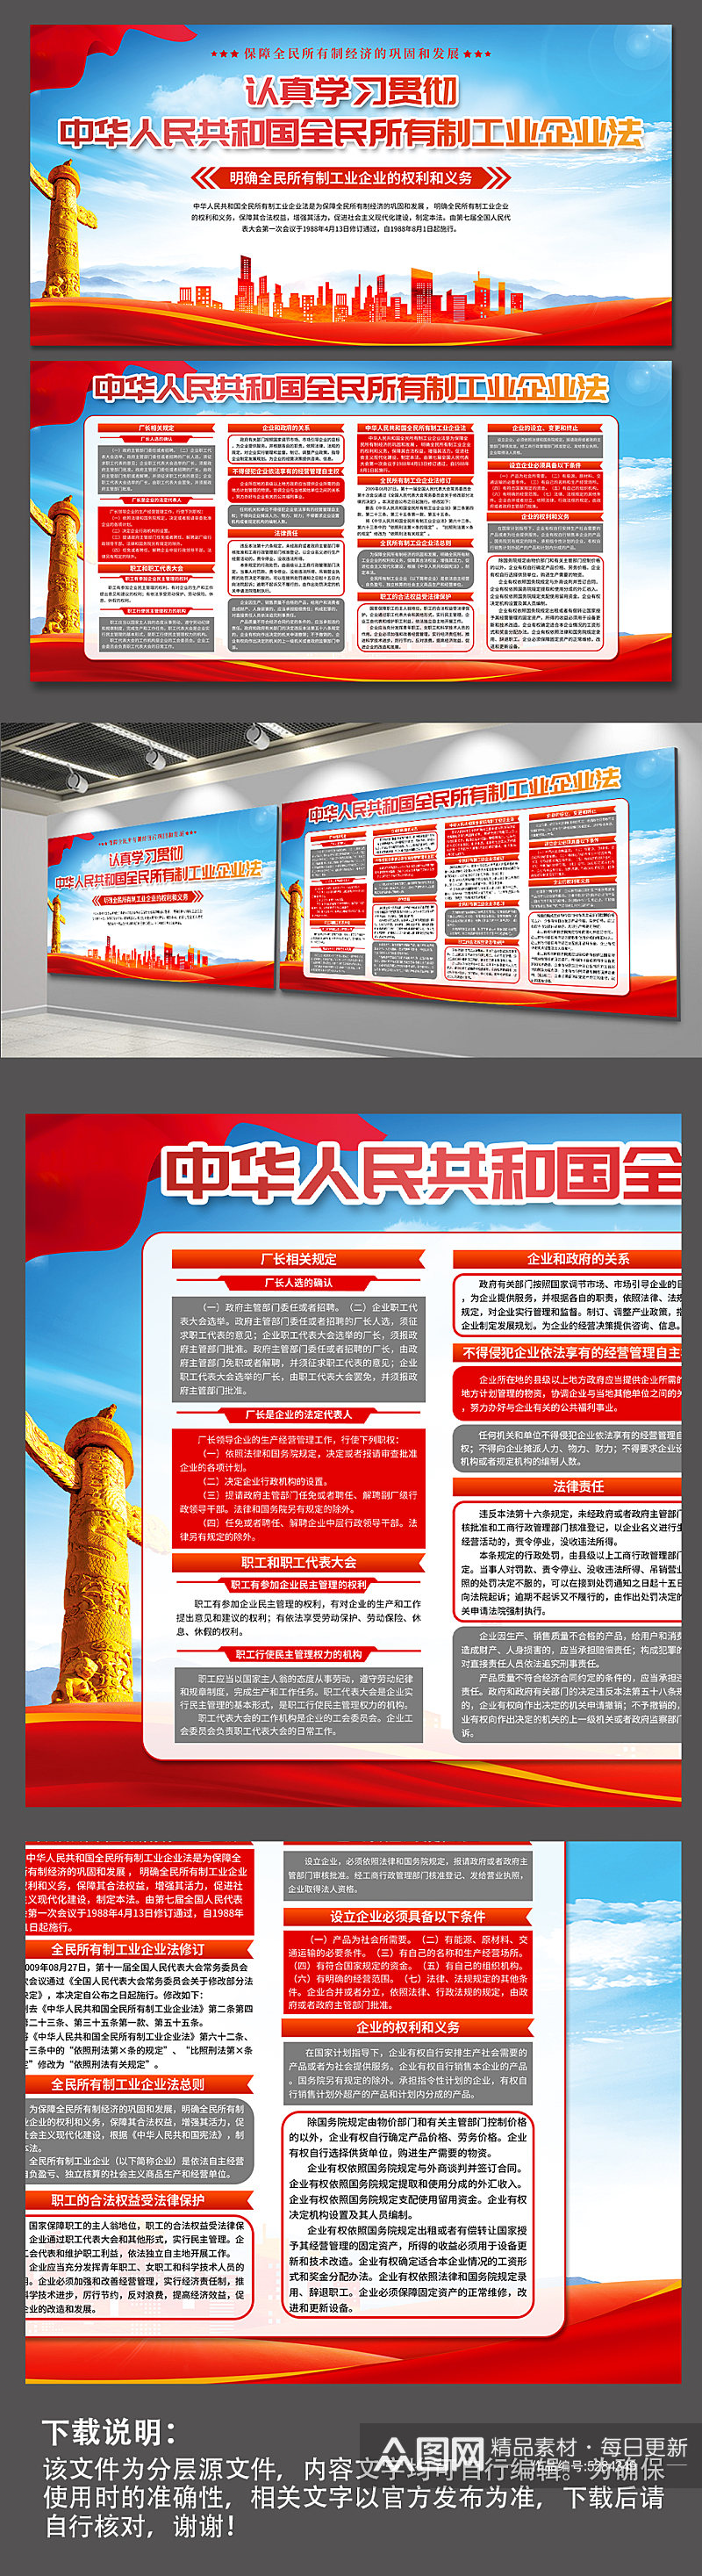 中华人民共和国全民所有制工业企业法展板素材